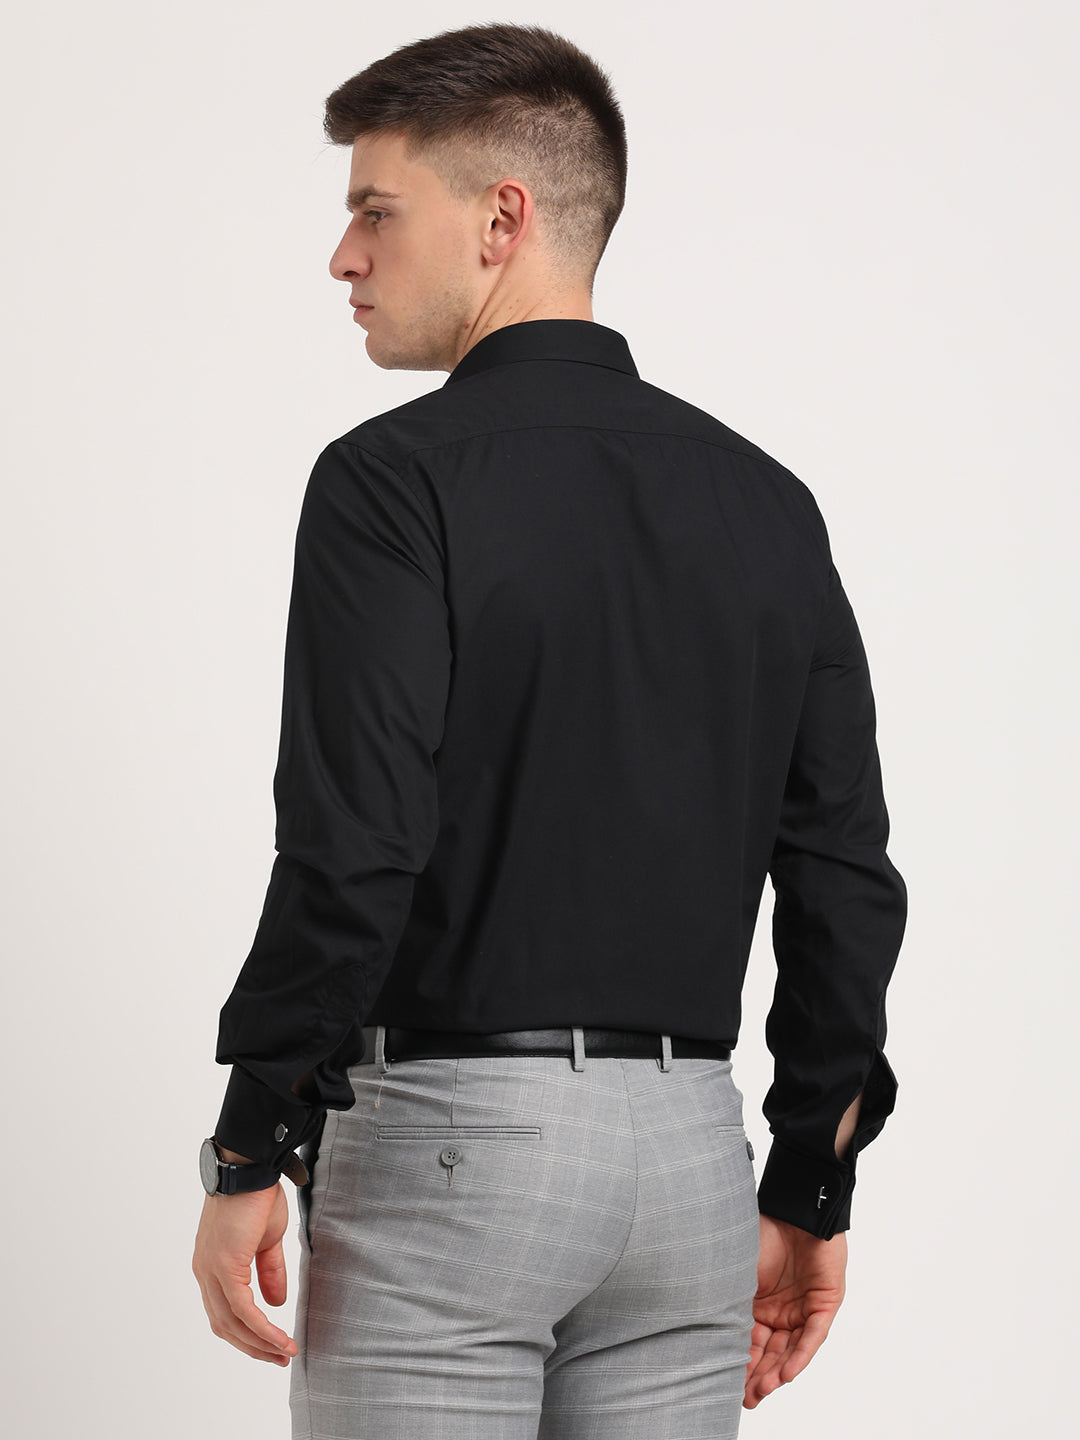 100% Cotton Black Plain Slim Fit Double Cuff Formal Shirt